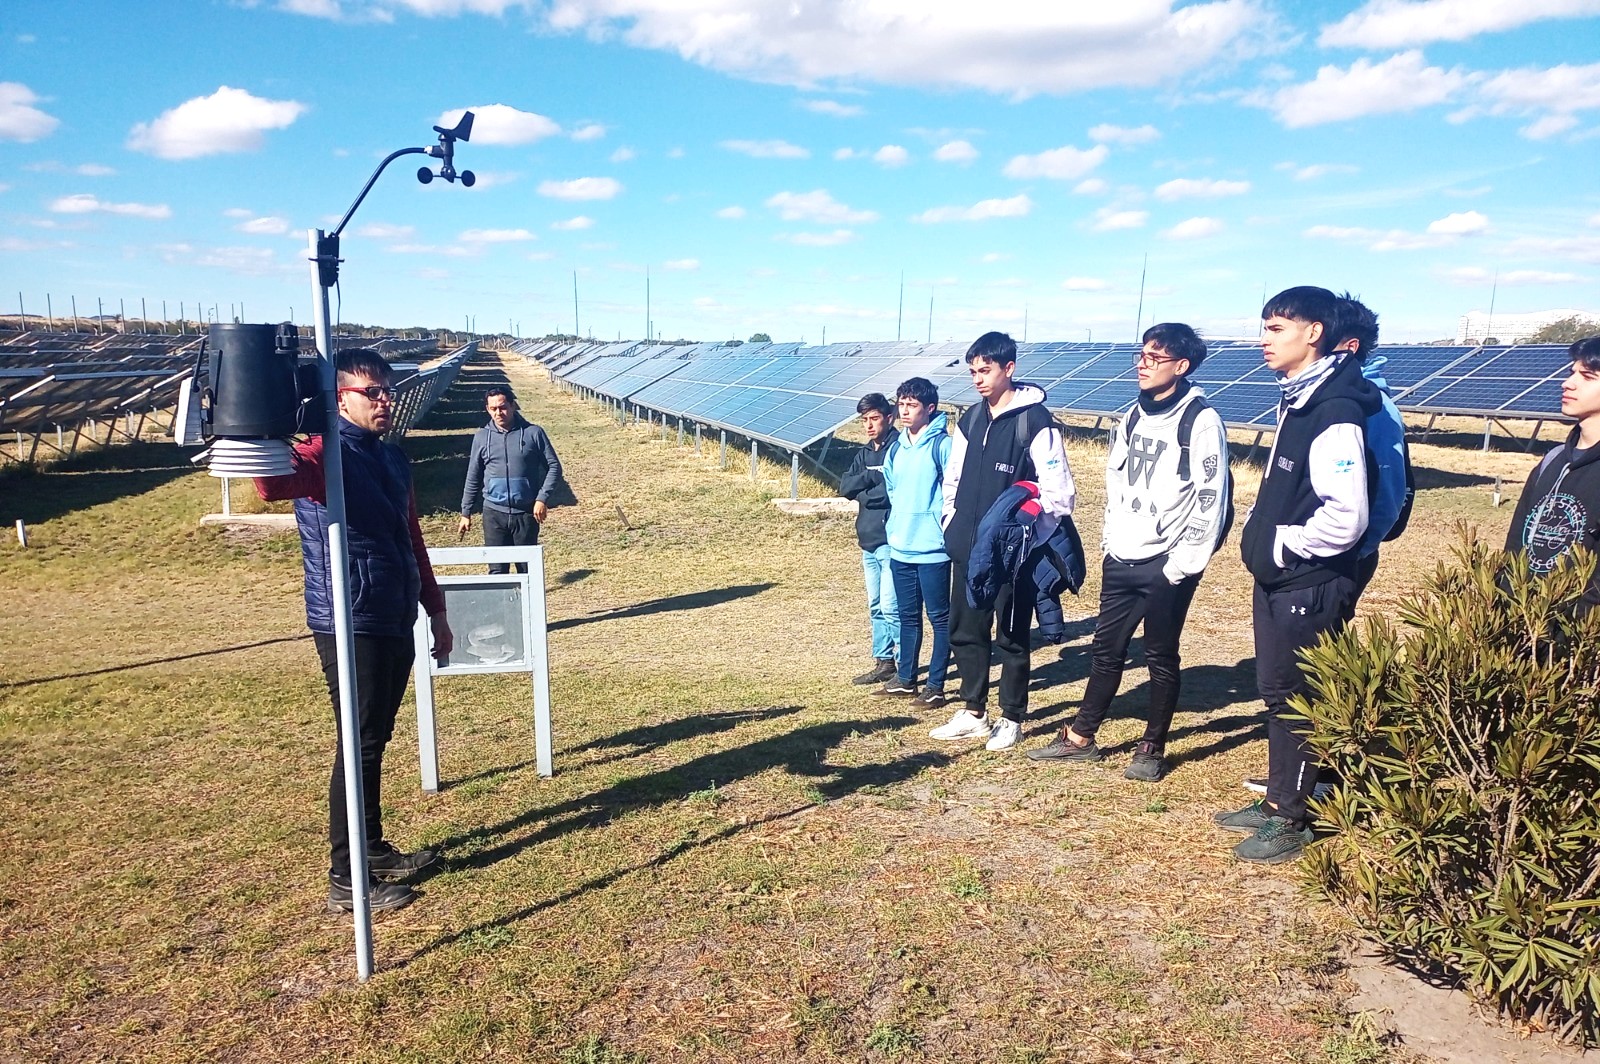 La central fotovoltaica abre sus puertas a las instituciones educativas